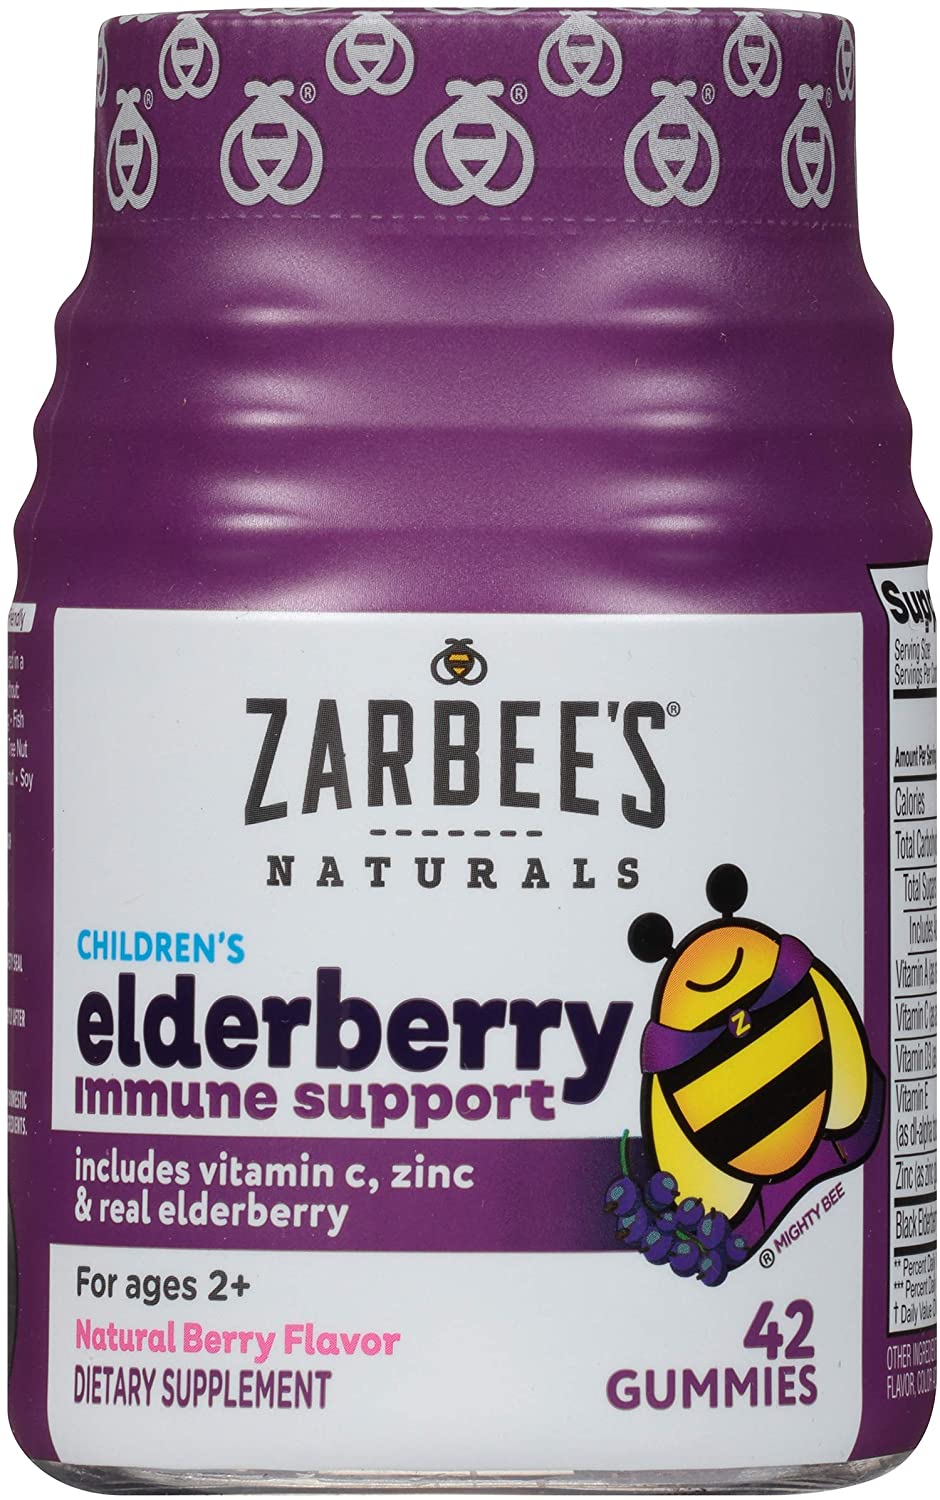 2. Zarbee's Naturals Children's Elderberry